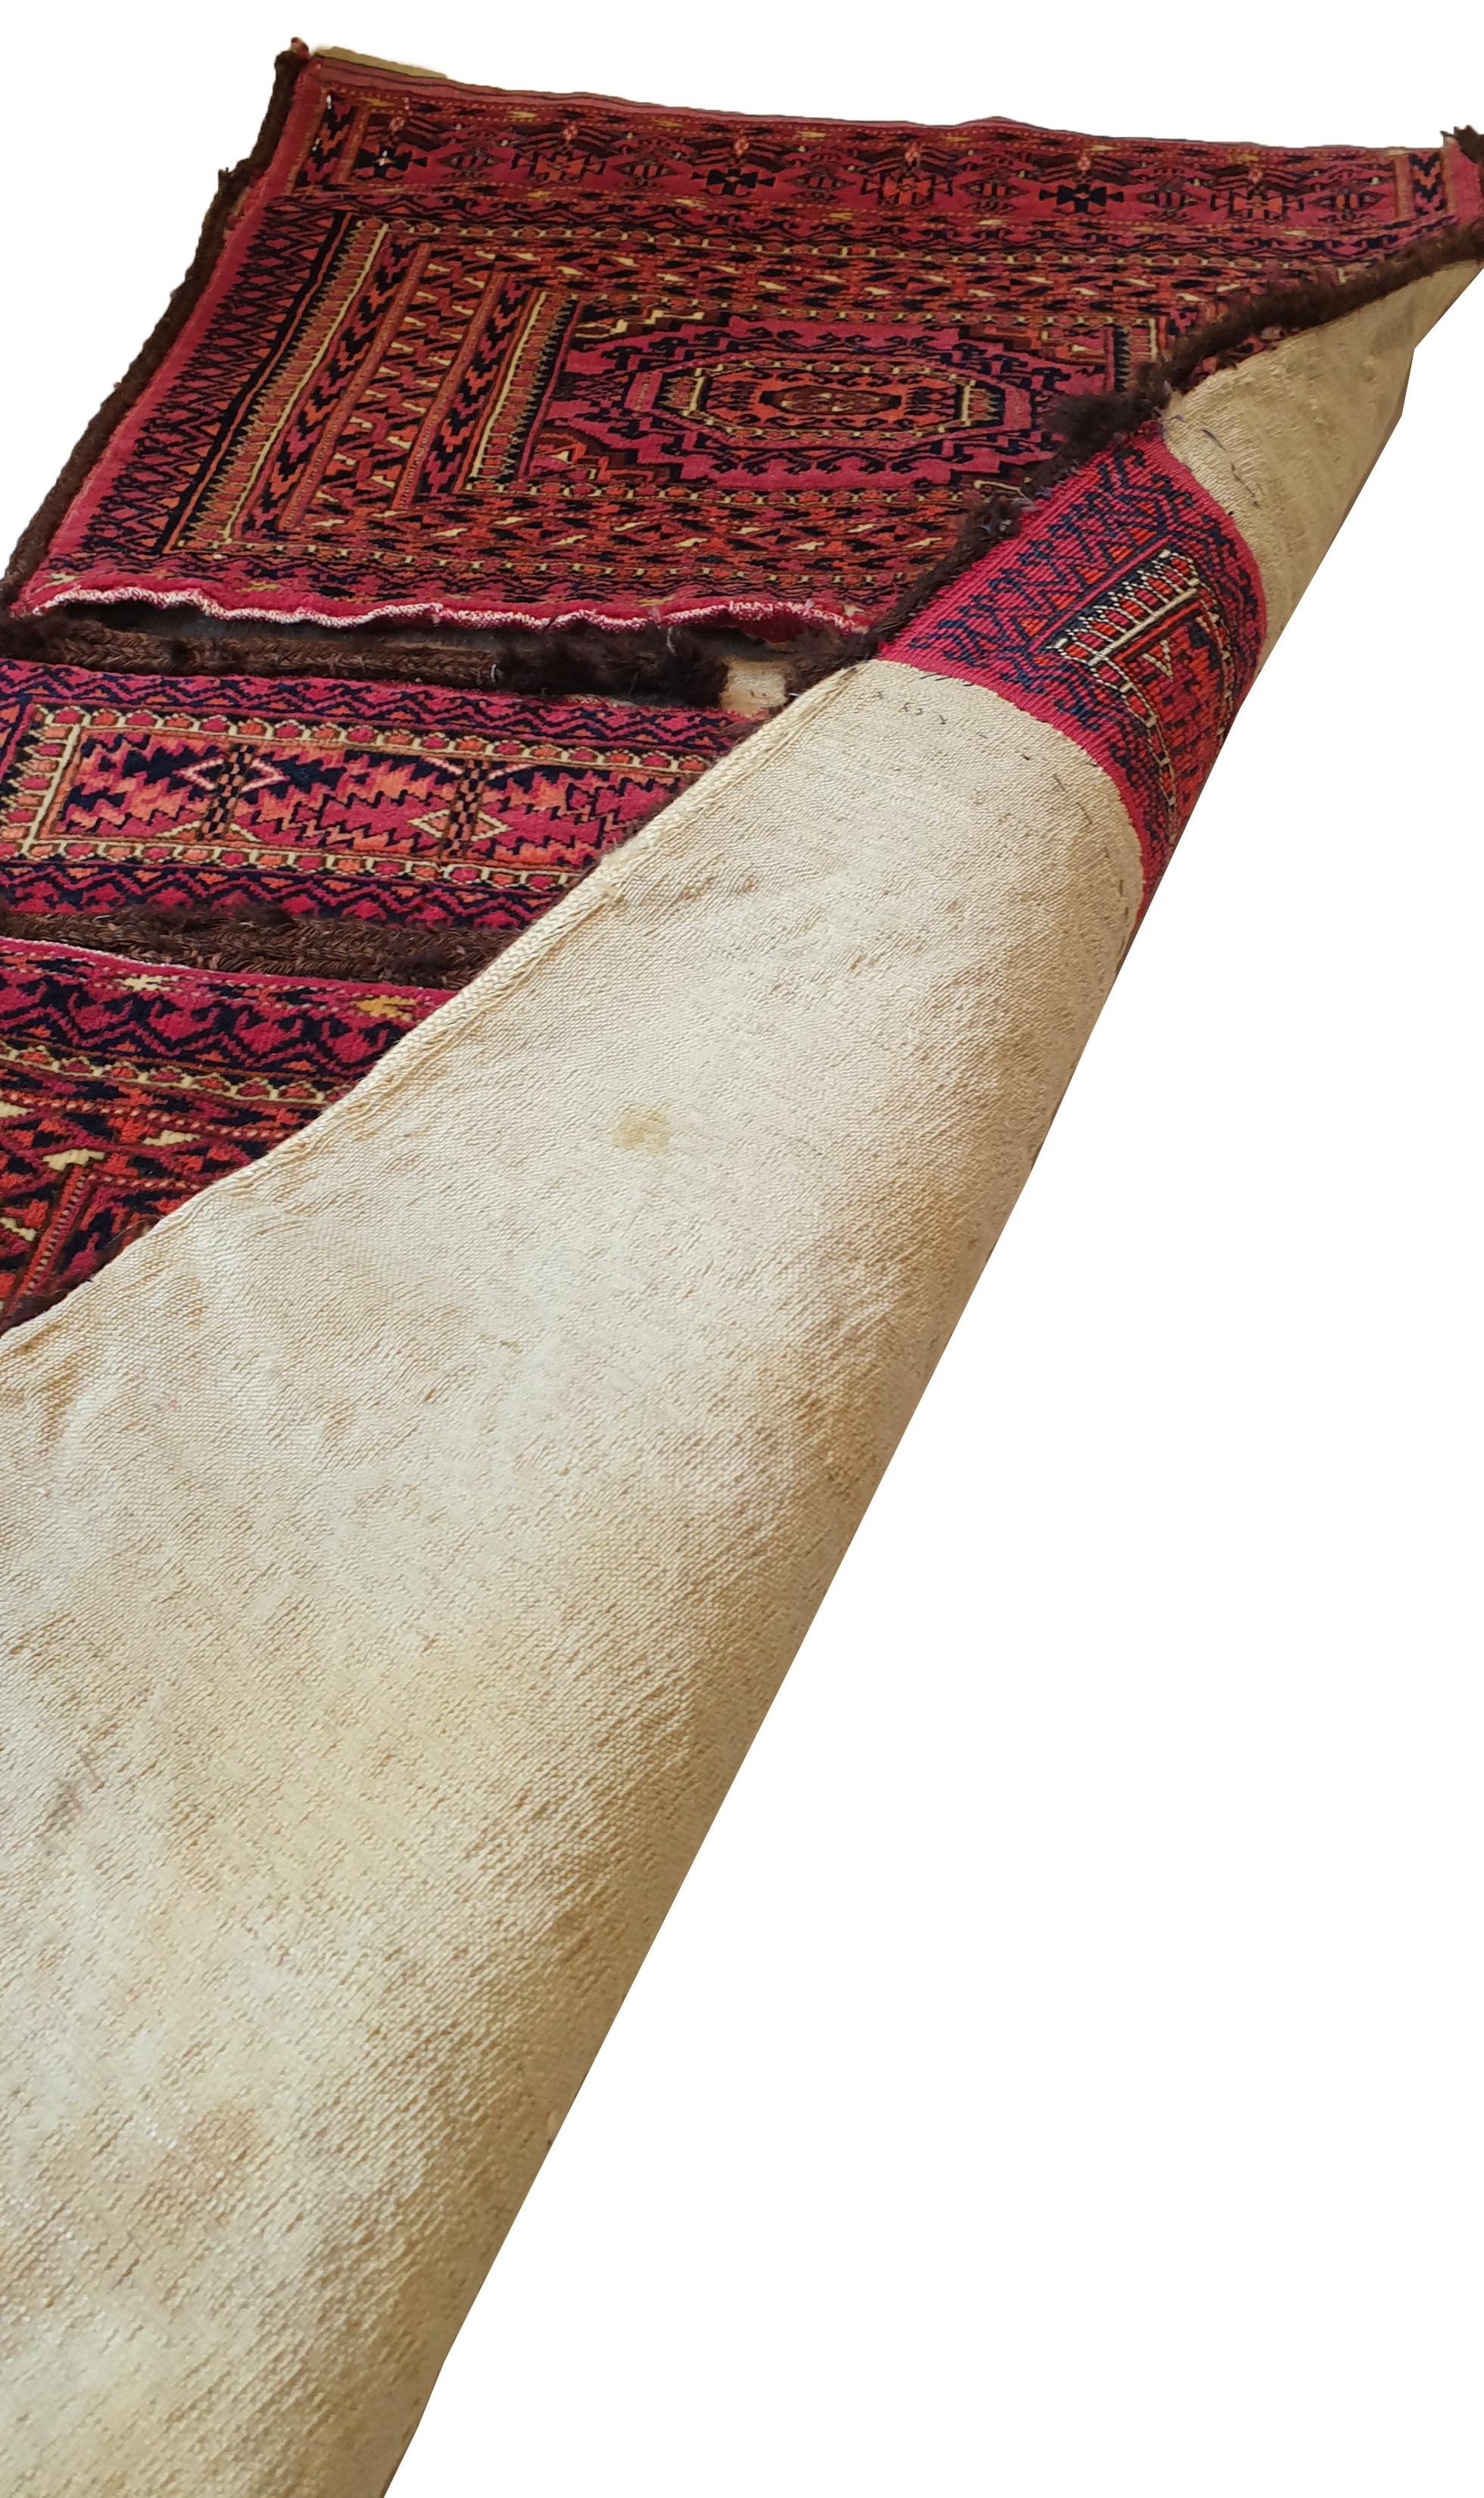 642 - Schöne turkmenische Tasche aus dem 19. Jahrhundert mit schönem Buchara-Muster und natürlichen roten Feldfarben, fein handgeknüpft mit Wollsamt auf Wollgrund.